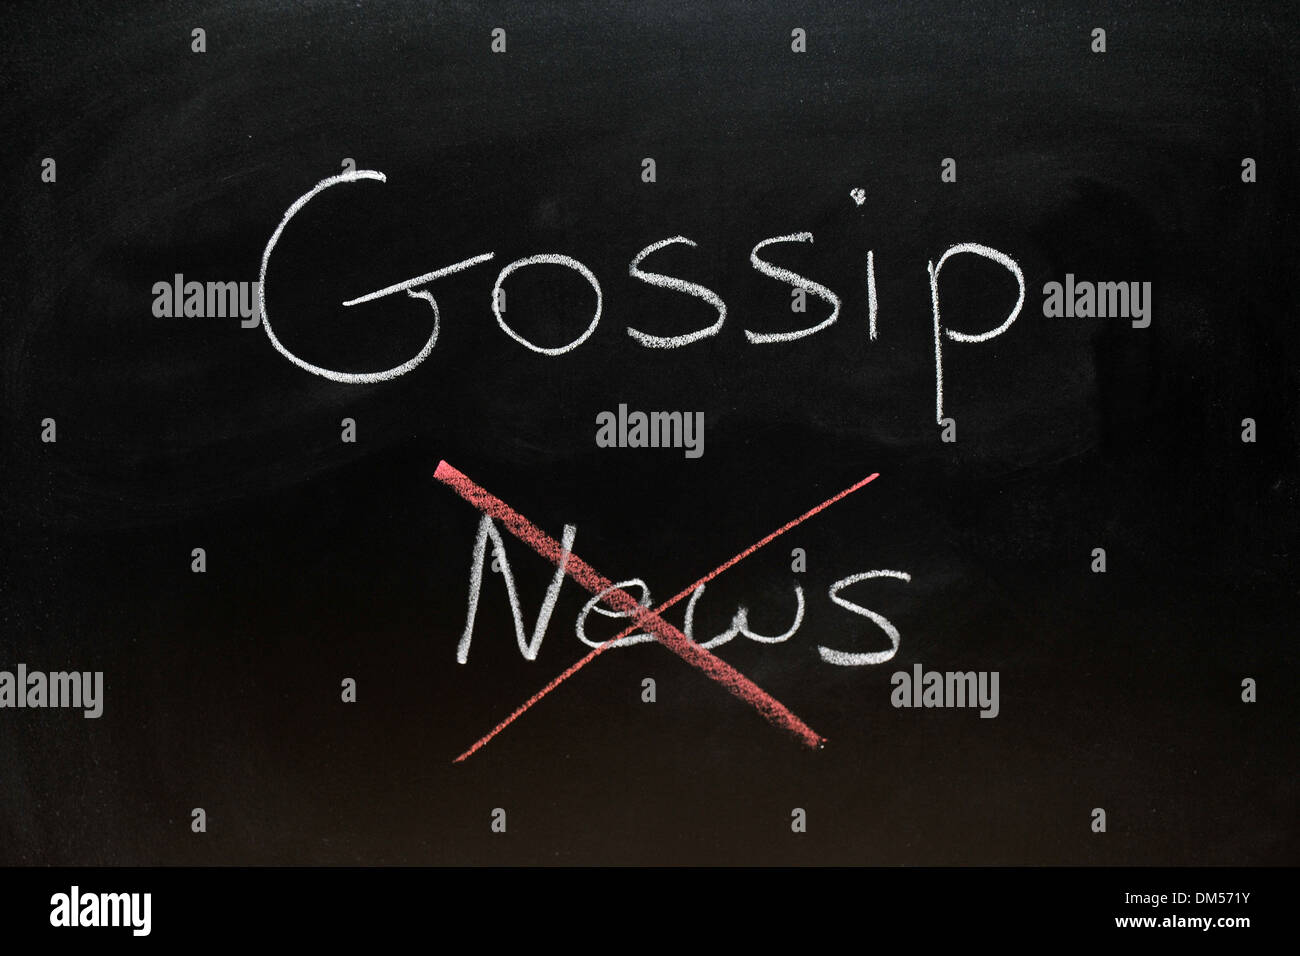 Gossip News dessiné sur un tableau noir à craie avec News barré. Banque D'Images